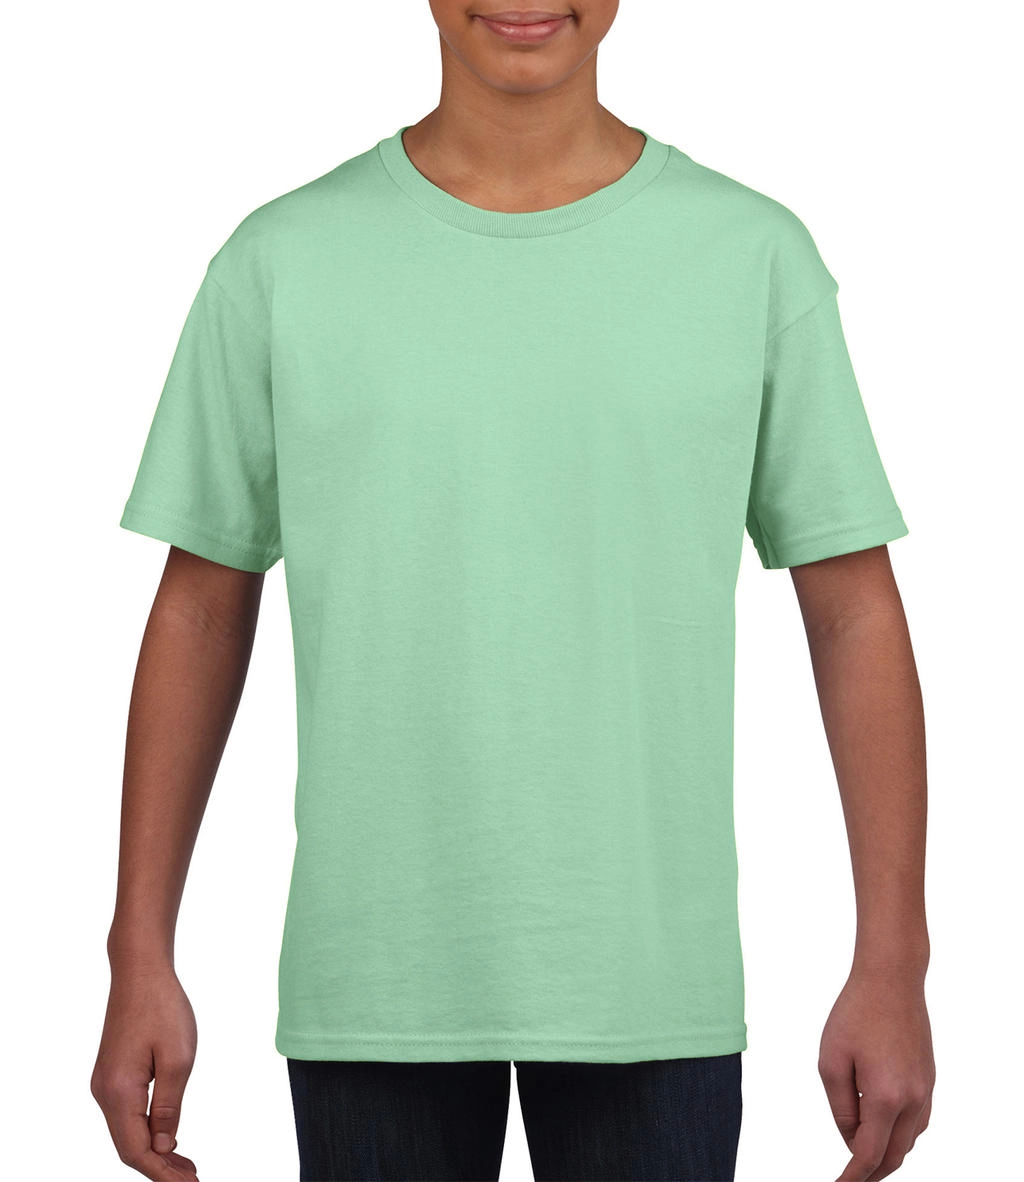 Softstyle® Youth T-Shirt zum Besticken und Bedrucken in der Farbe Mint Green mit Ihren Logo, Schriftzug oder Motiv.